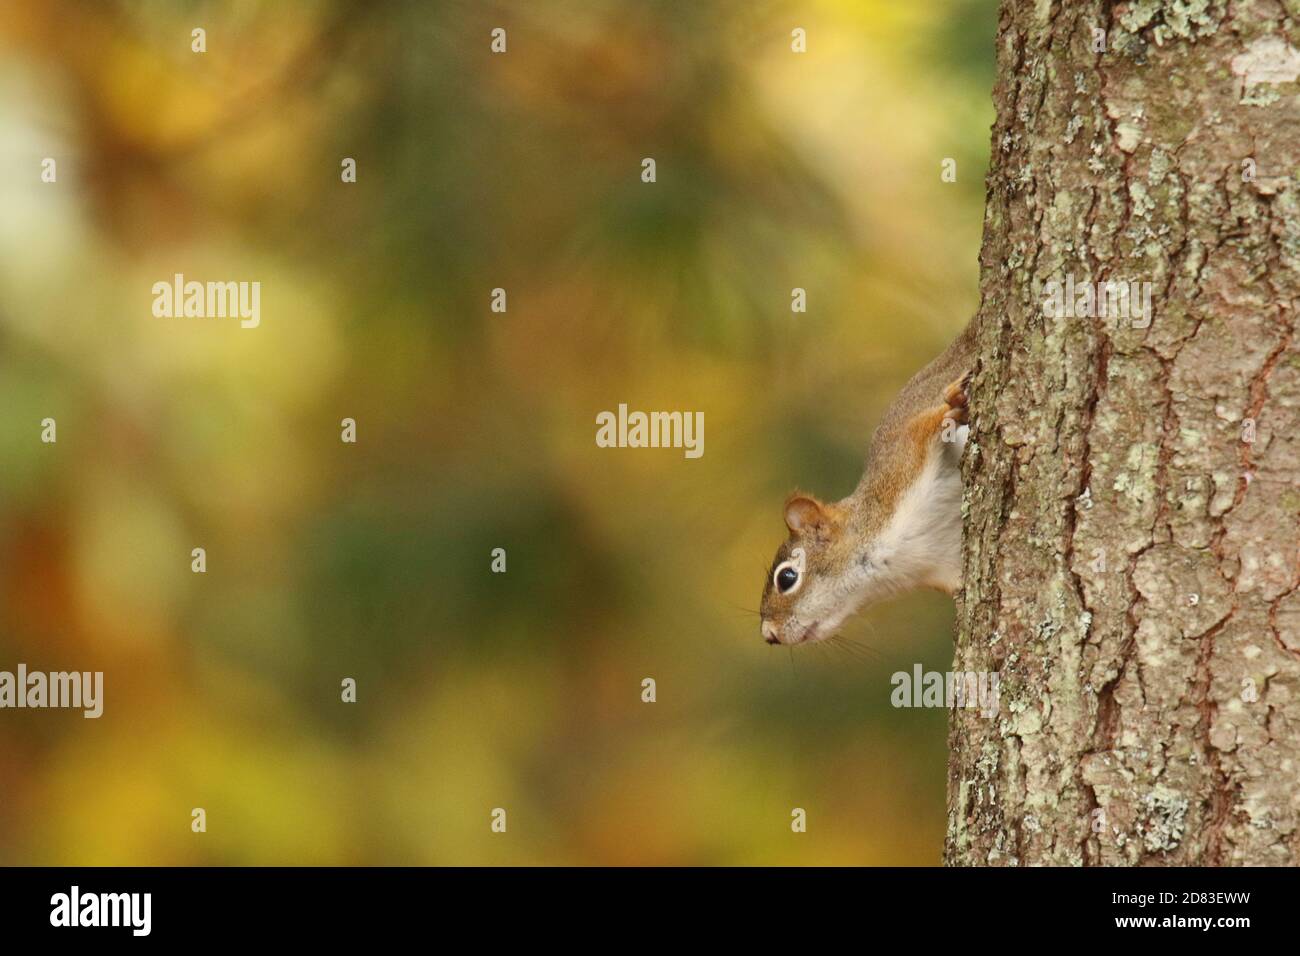 Un écureuil rouge descendant un arbre avec un fond De feuilles d'automne Banque D'Images